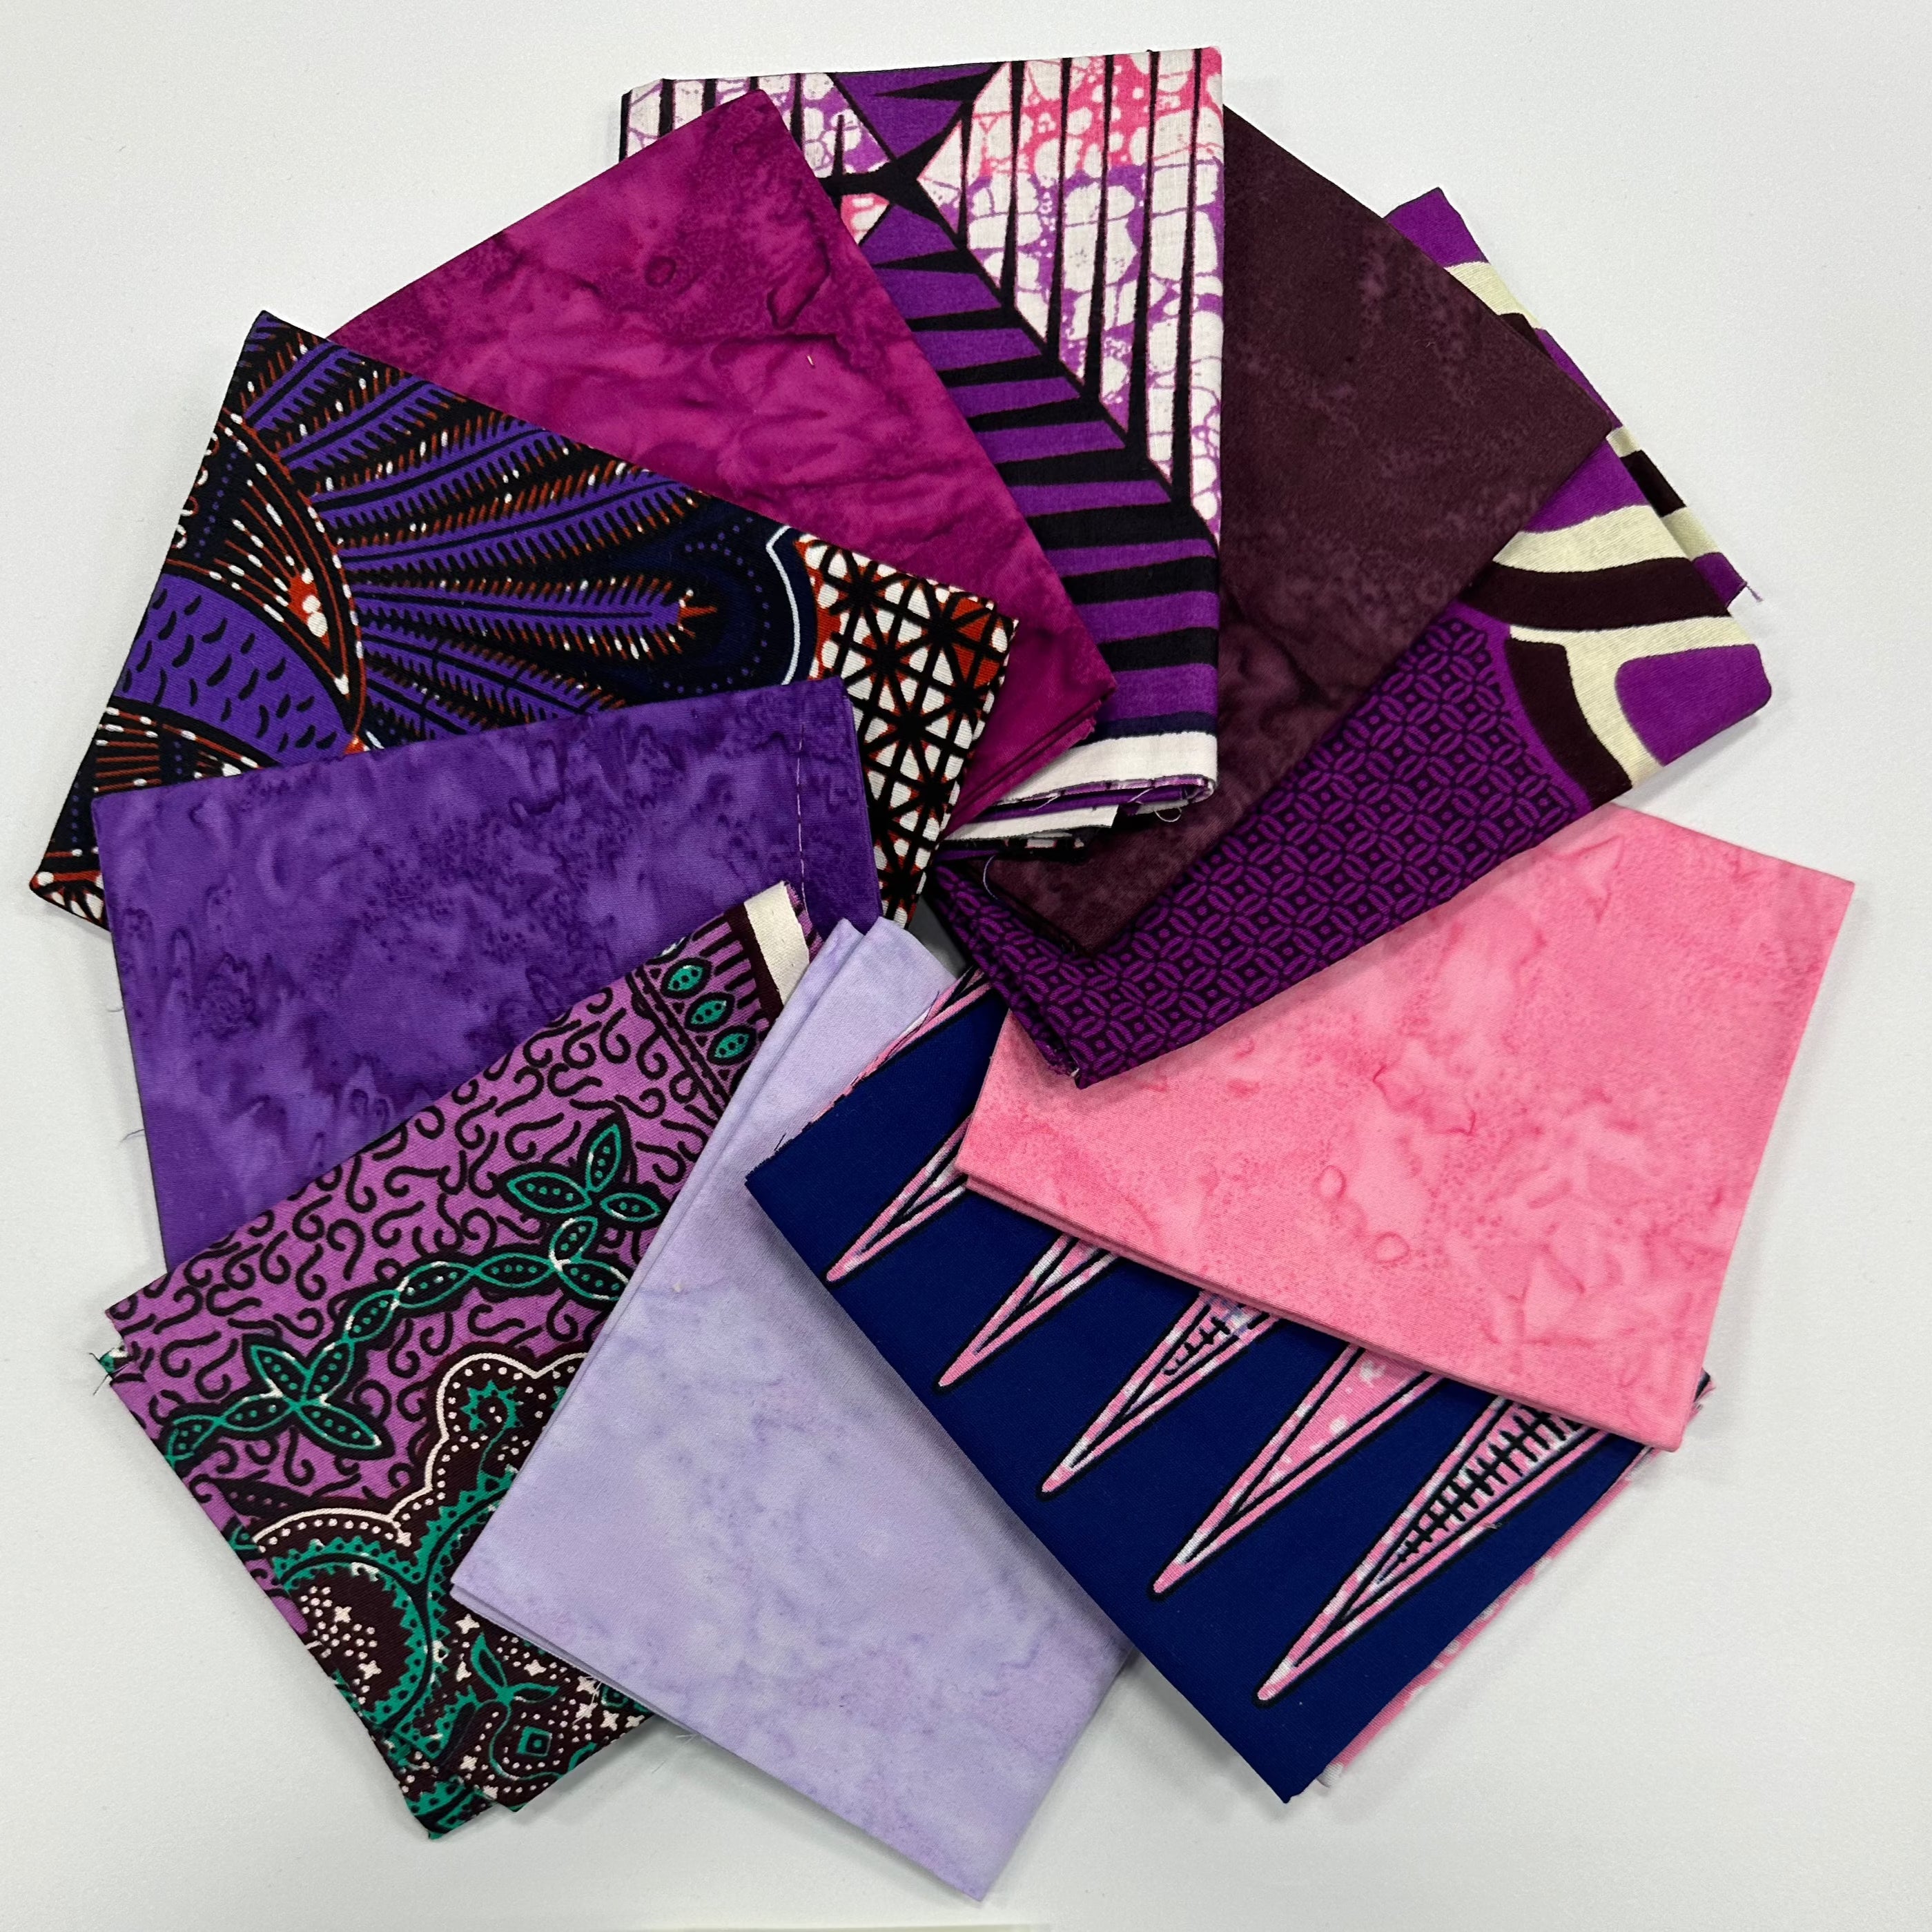 Custom Mixed Fat Quarter Bundles: African Print/Batik